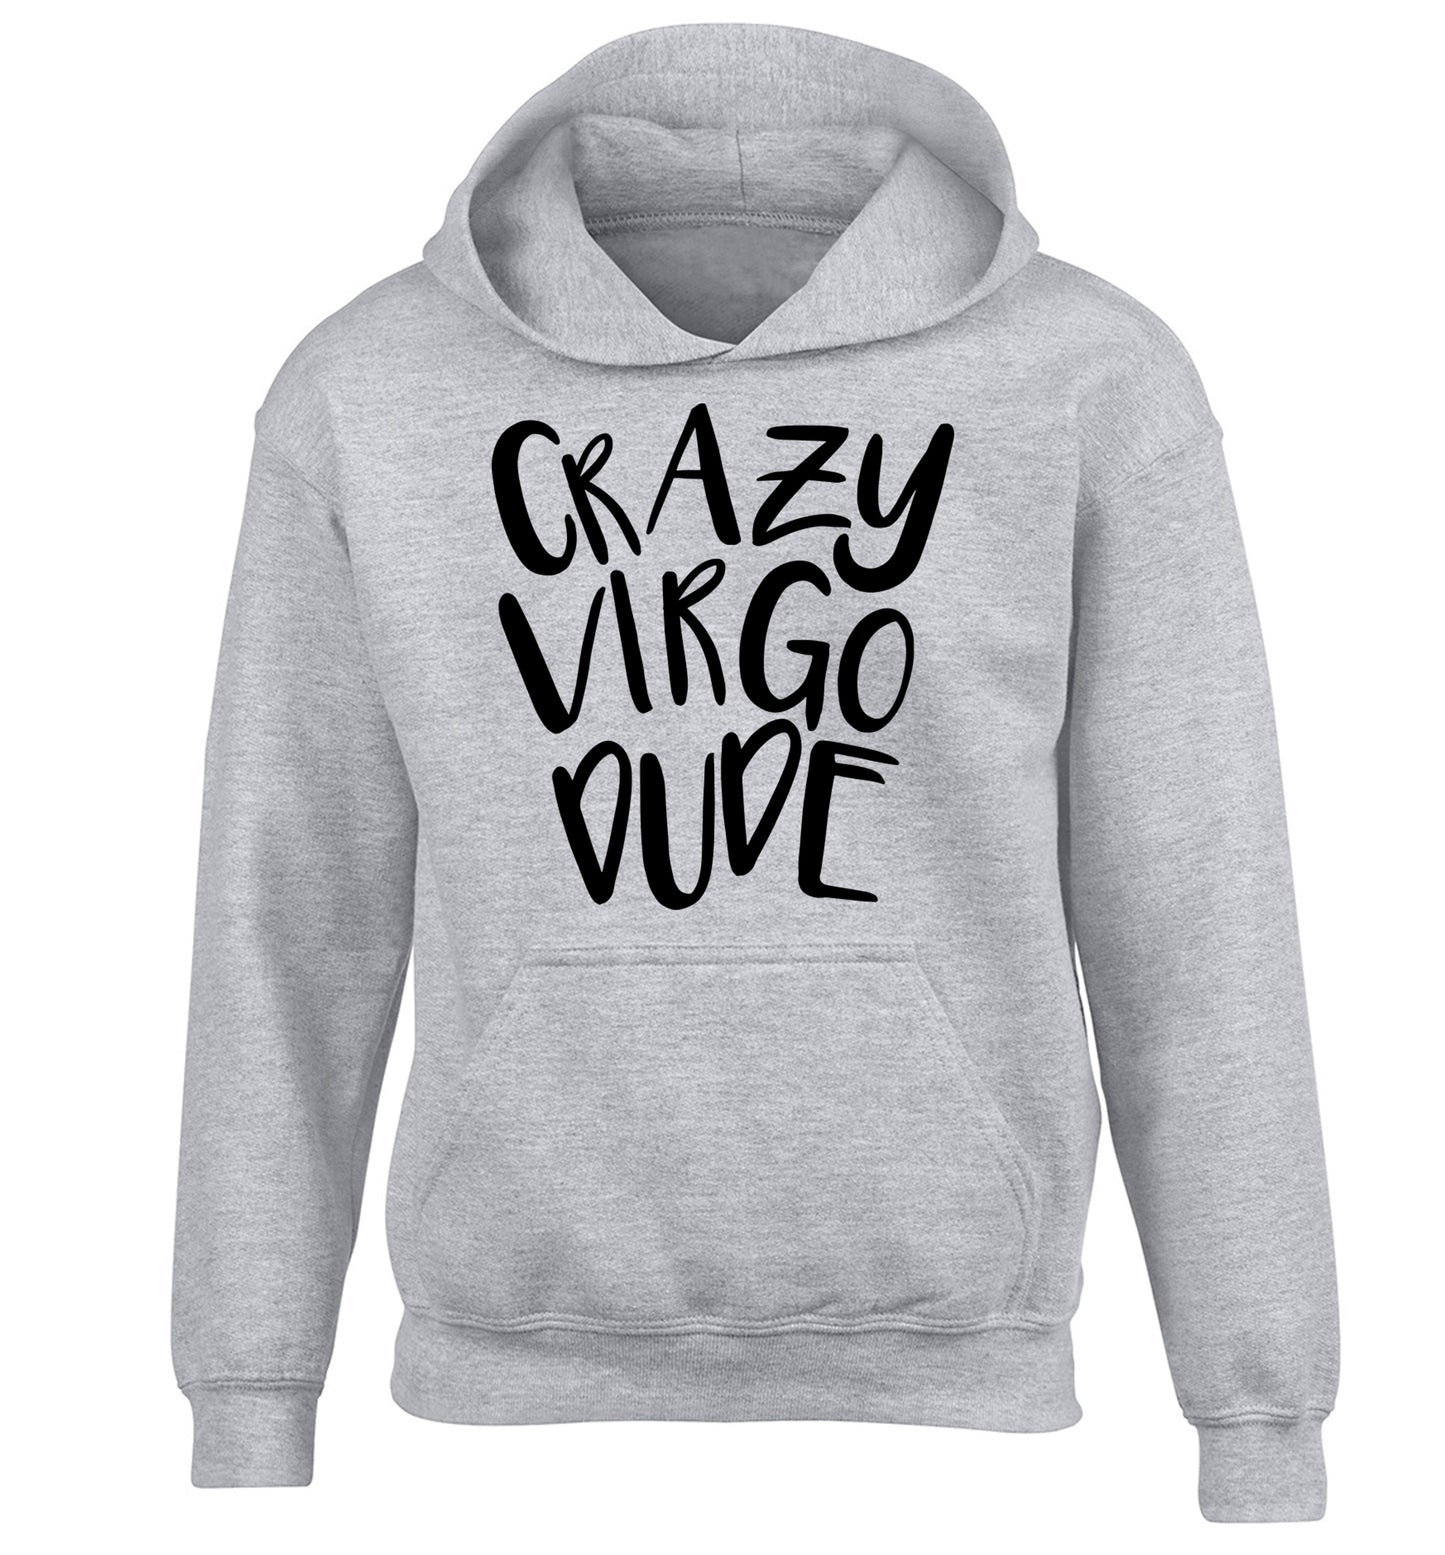 Crazy virgo dude children's grey hoodie 12-13 Years